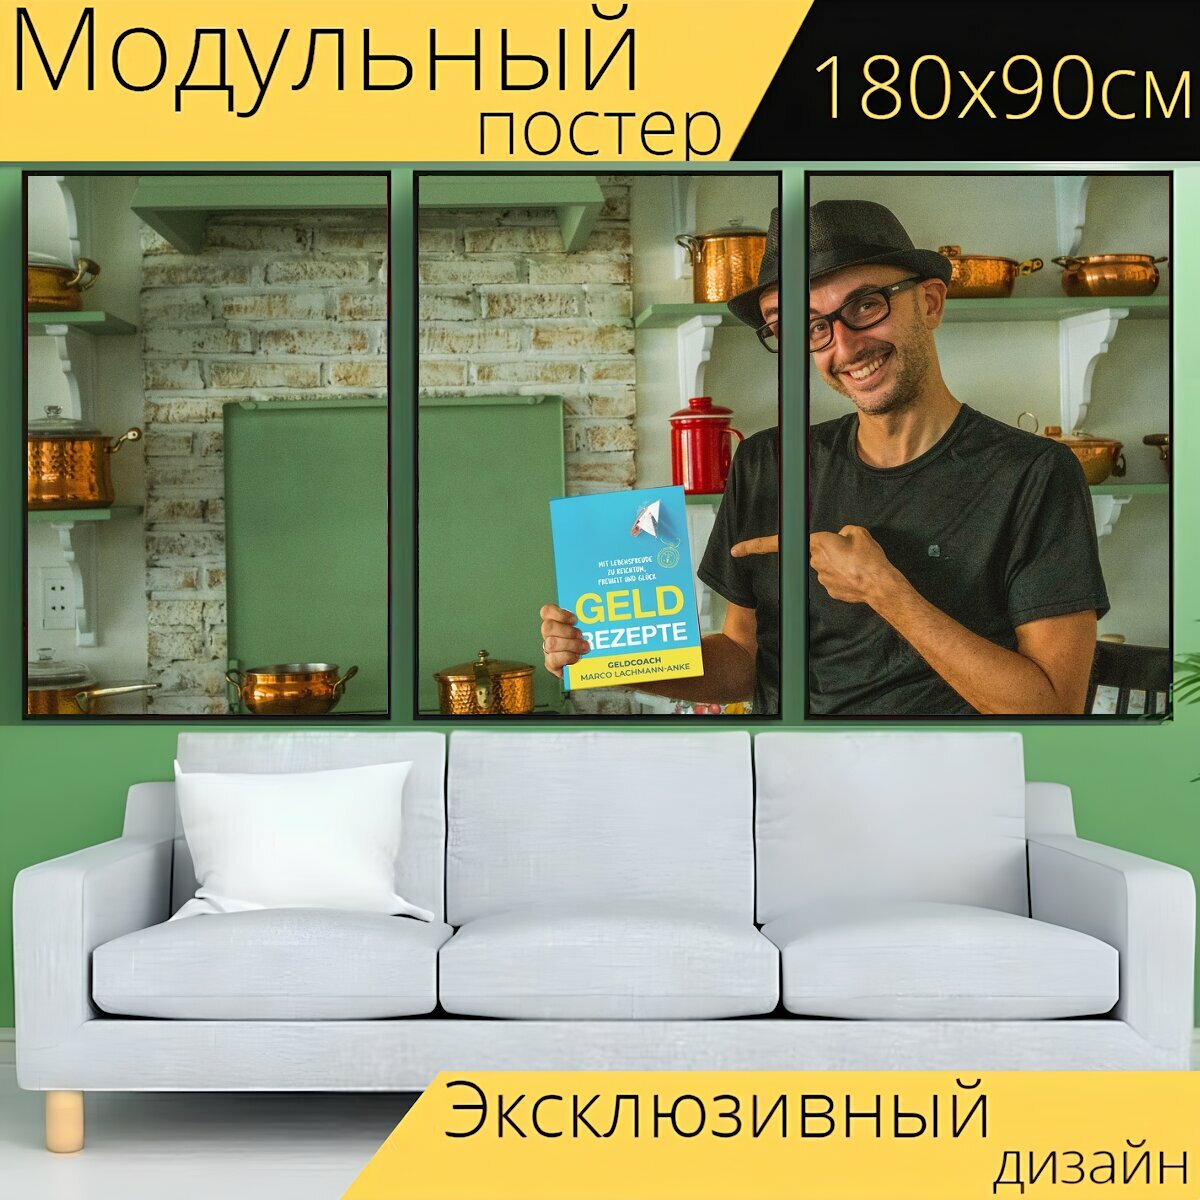 Модульный постер "Деньги, кухня, деньги рецепты" 180 x 90 см. для интерьера